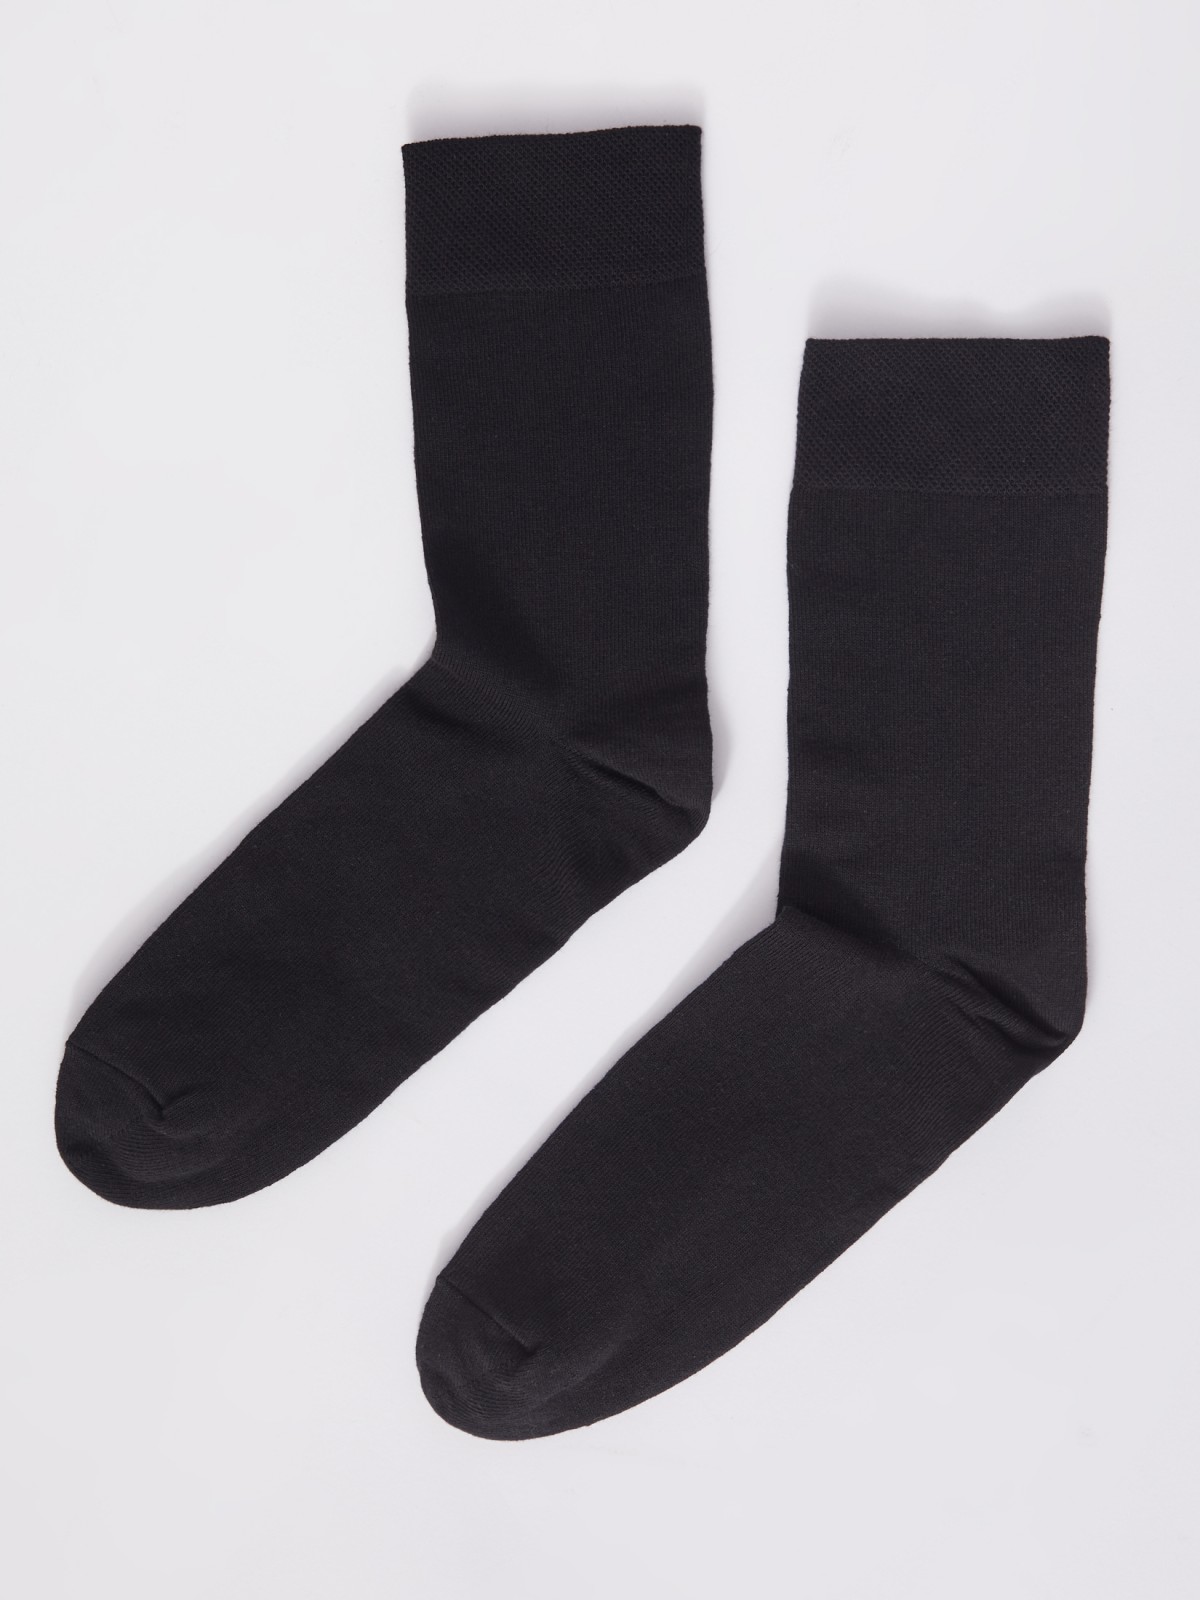 Набор носков (3 пары в комплекте) zolla 01331996G015, цвет черный, размер 25-27 - фото 4